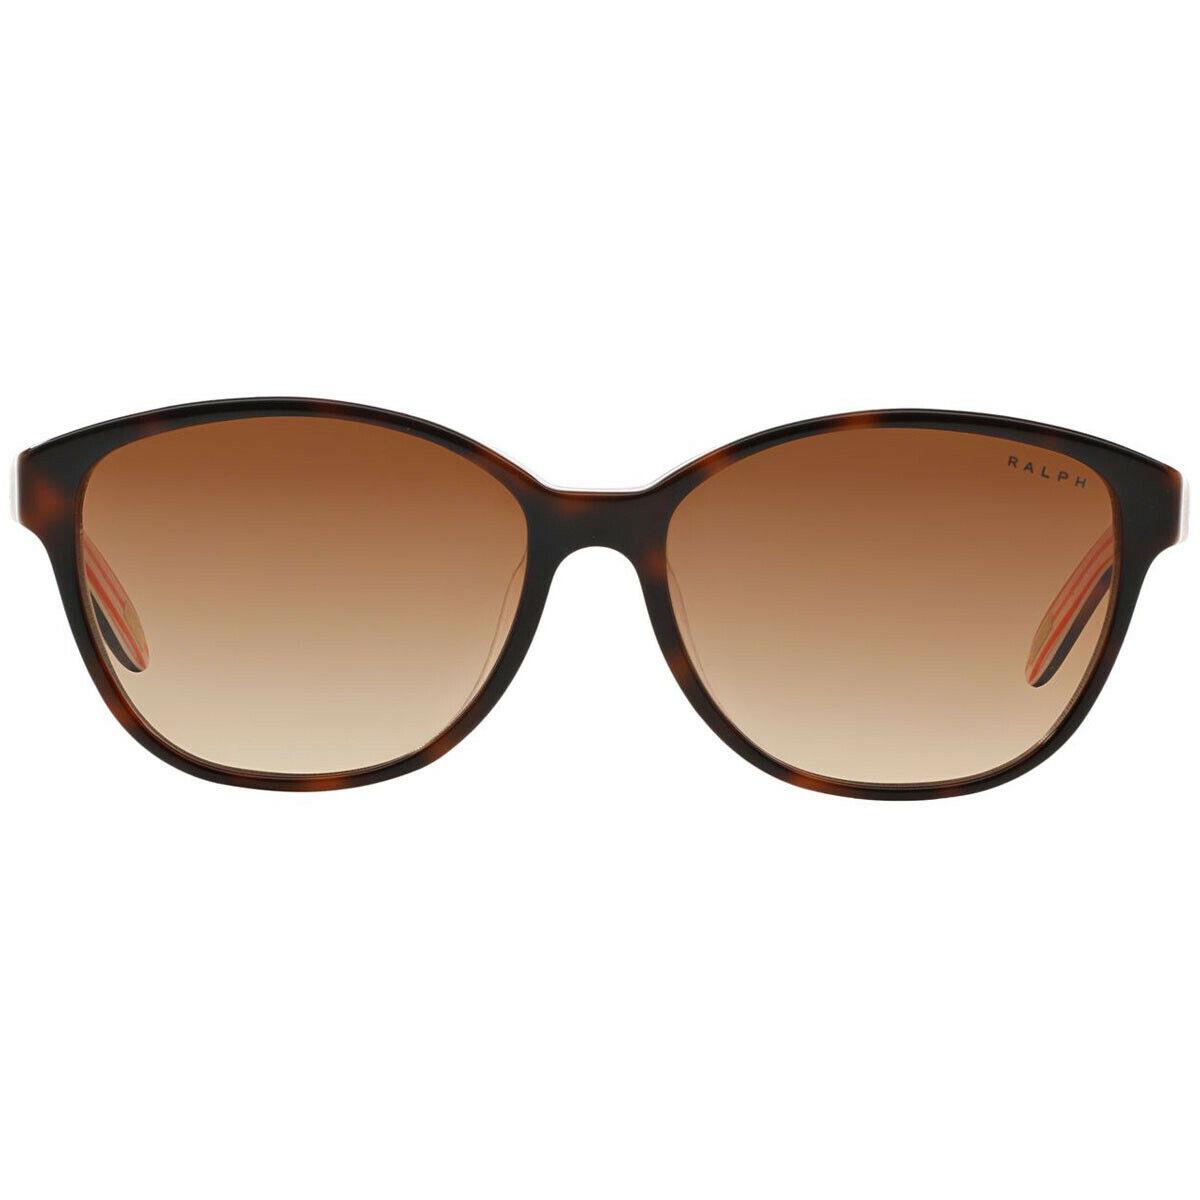 Polo Ralph Lauren Sunglasses RA5128 977/13 Havana Frames 55MM ST - Havana Frame, Brown Lens